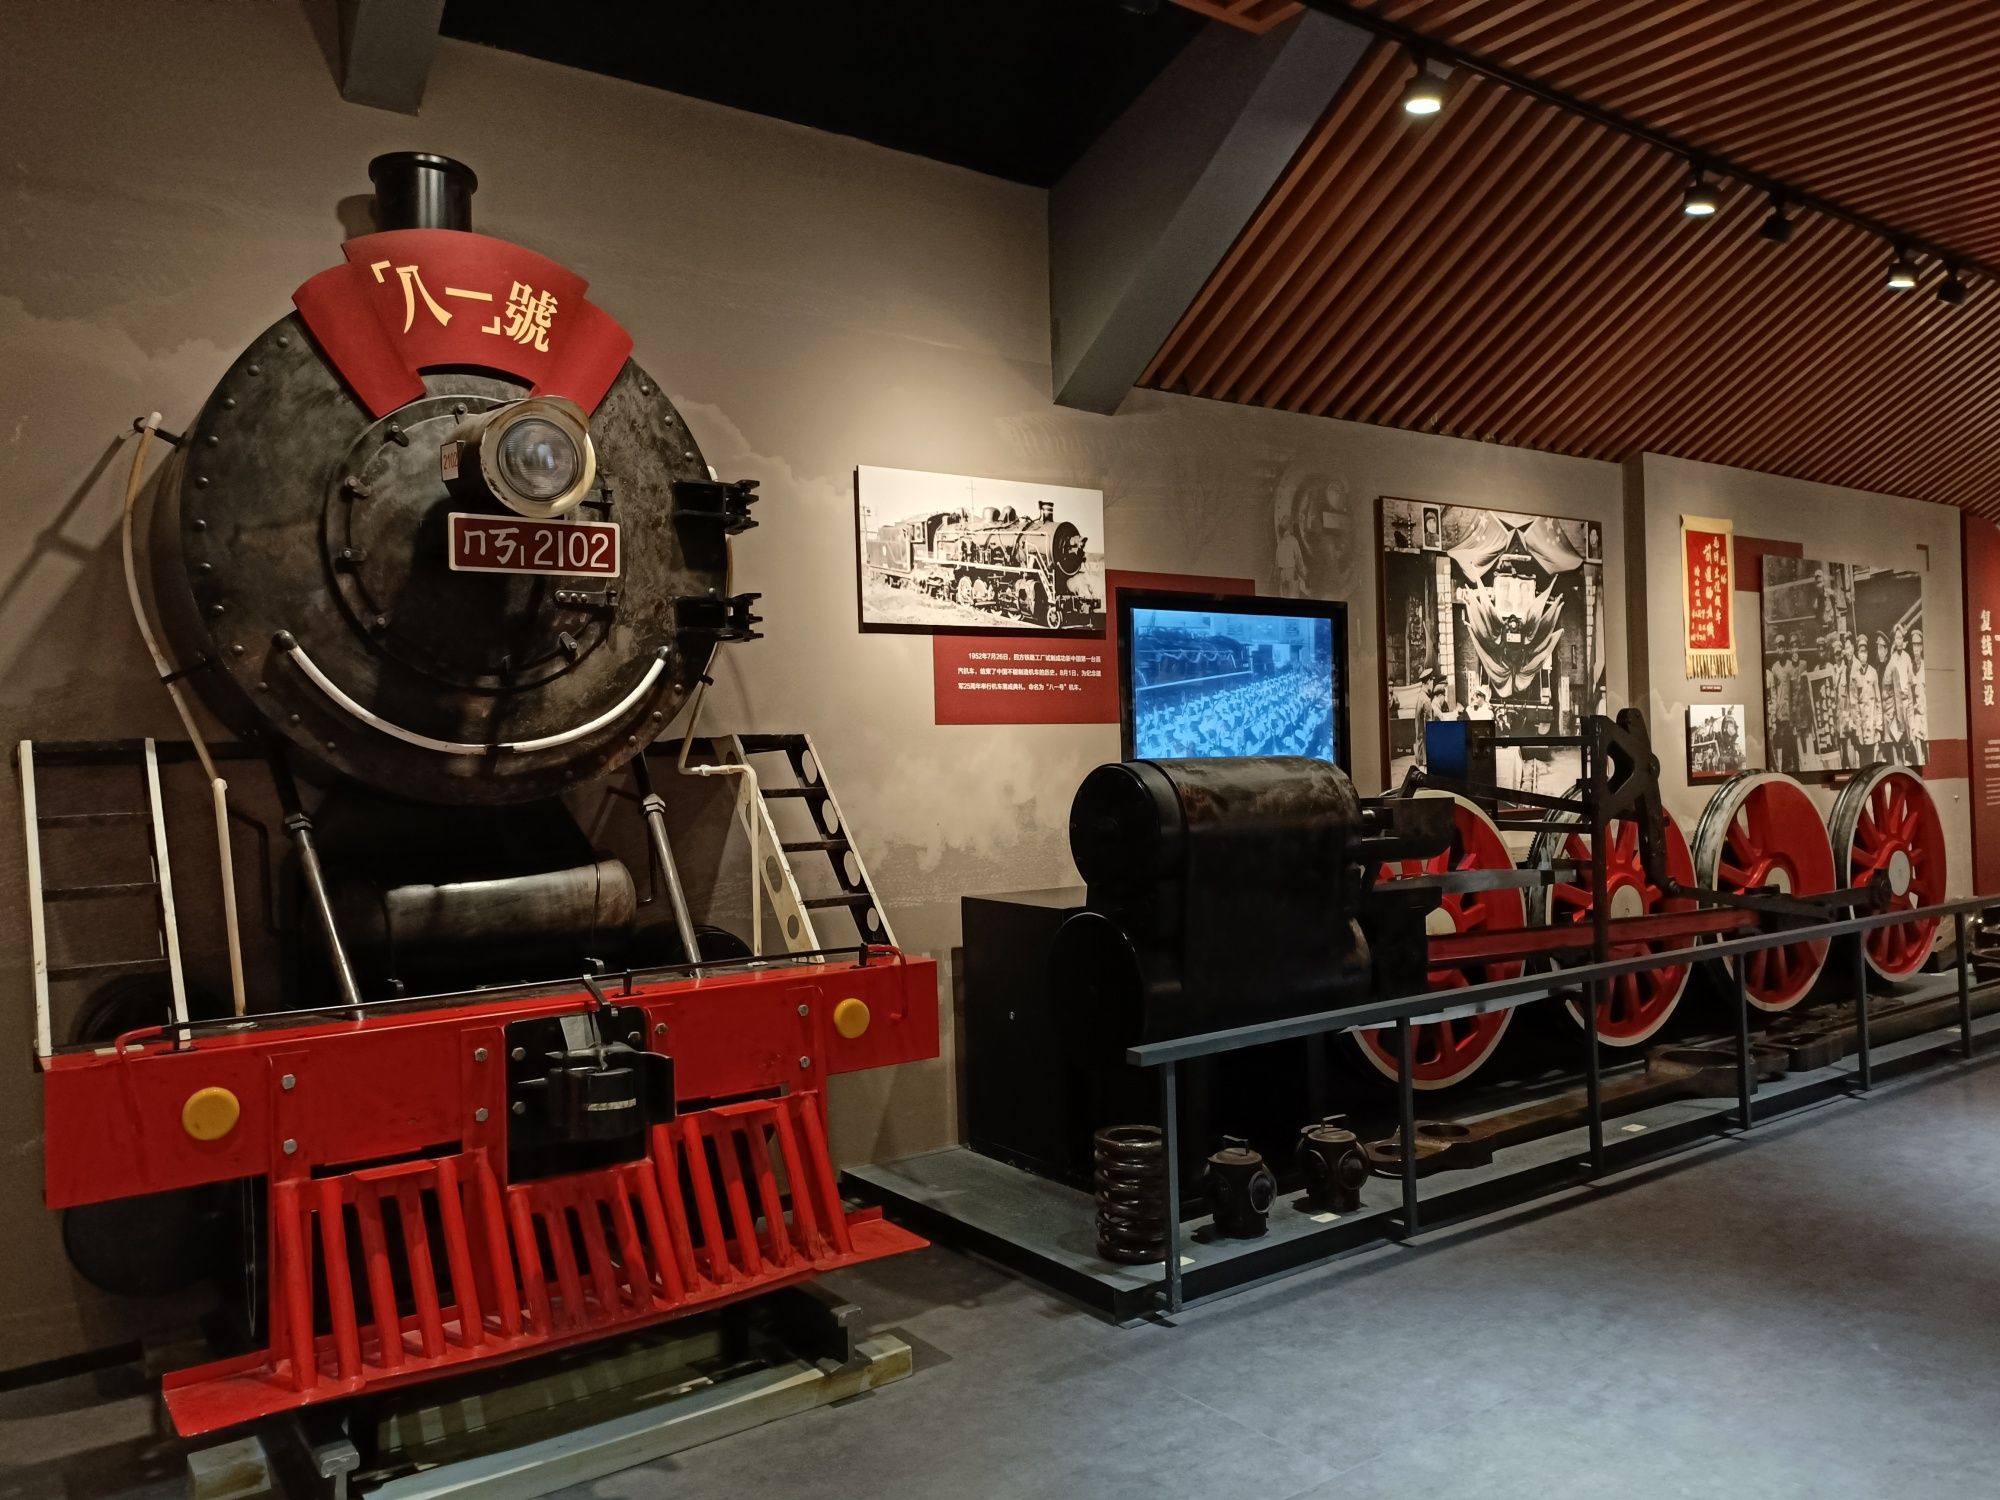 胶济铁路青岛博物馆开馆 承载山东第一条铁路历史